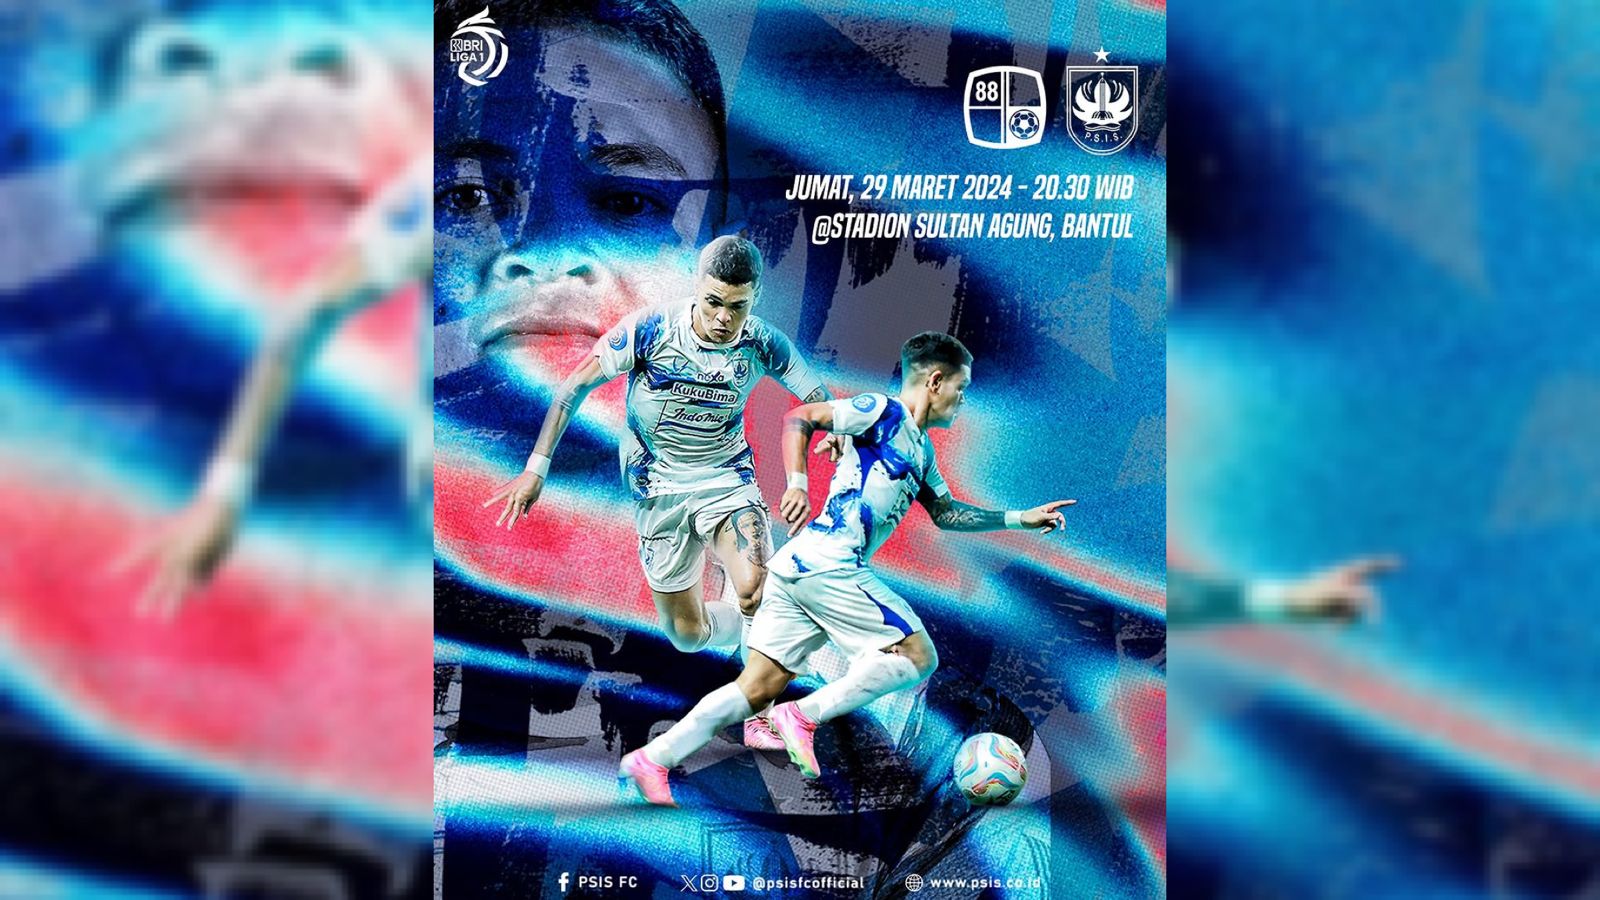 Prediksi Skor Barito Putera vs PSIS Semarang BRI Liga 1 29 Maret 2024 Serta Live Streaming